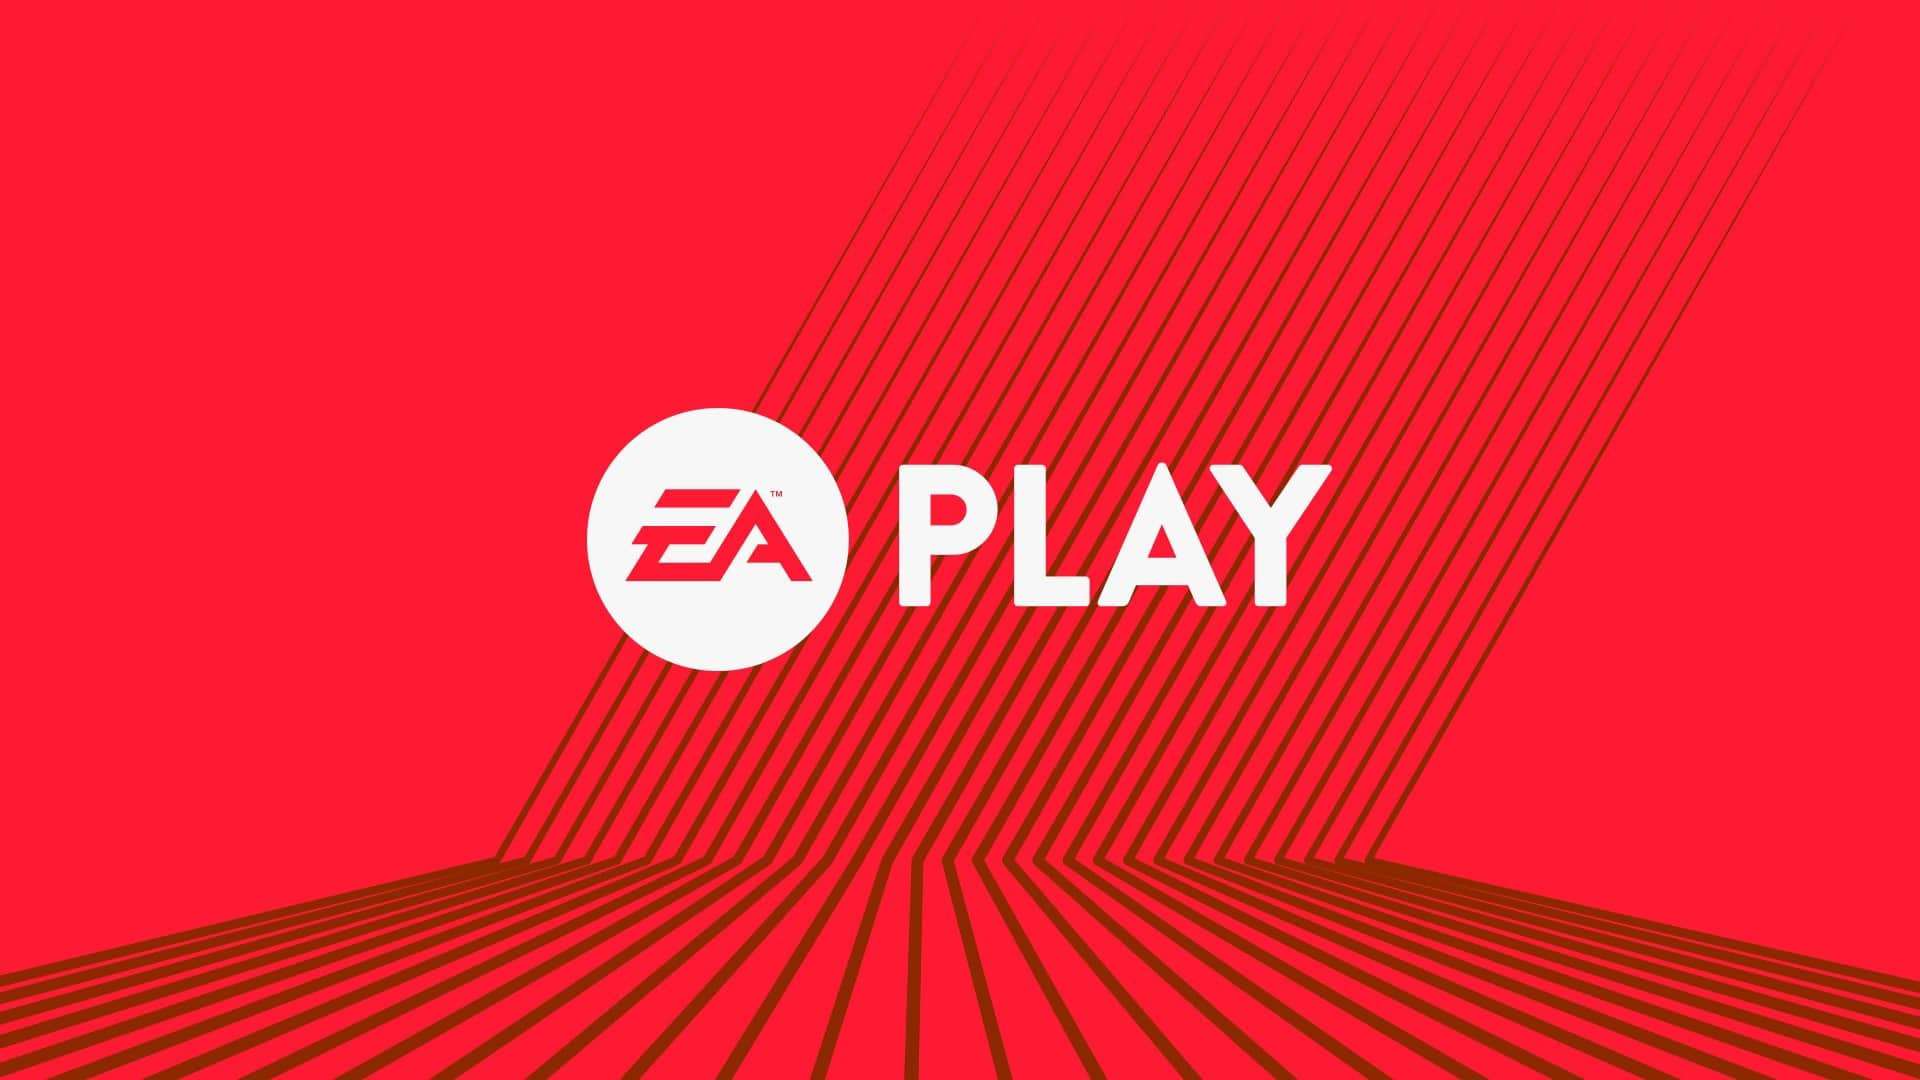 EA_Play_logo